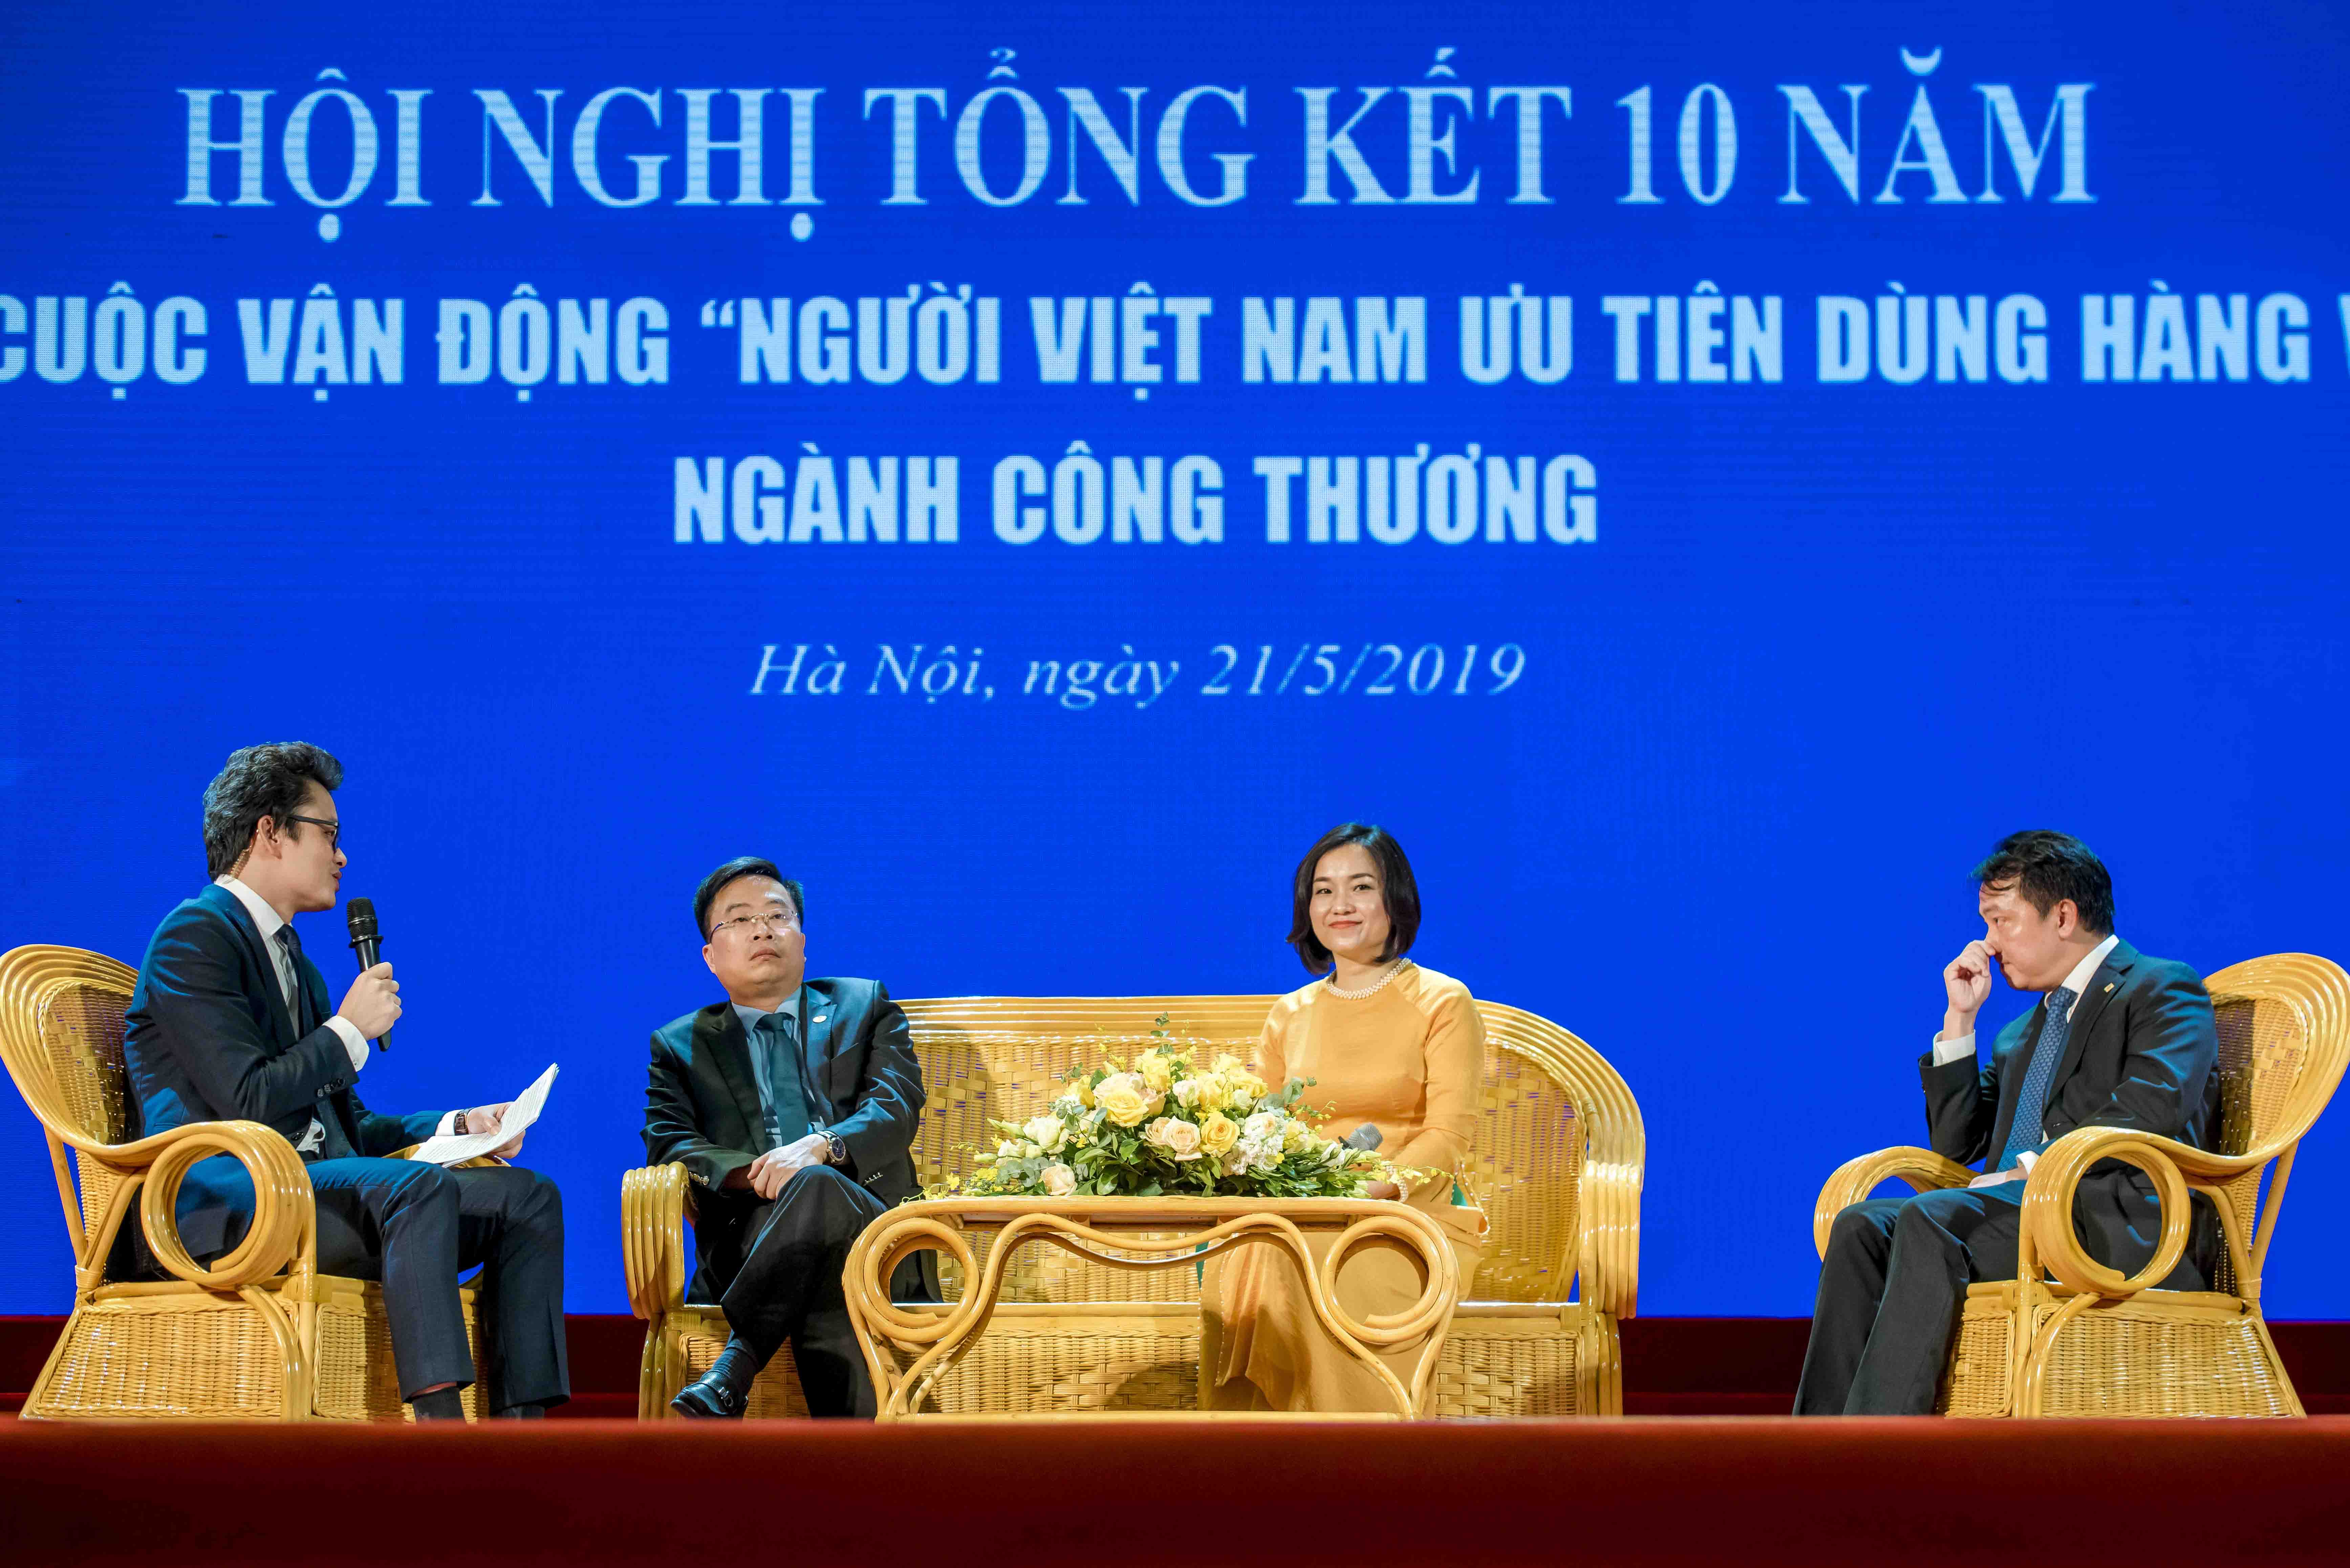 Bà Nguyễn Thị Phương - Phó Tổng Giám đốc Big C Việt Nam, Tập đoàn Central Group Việt Nam